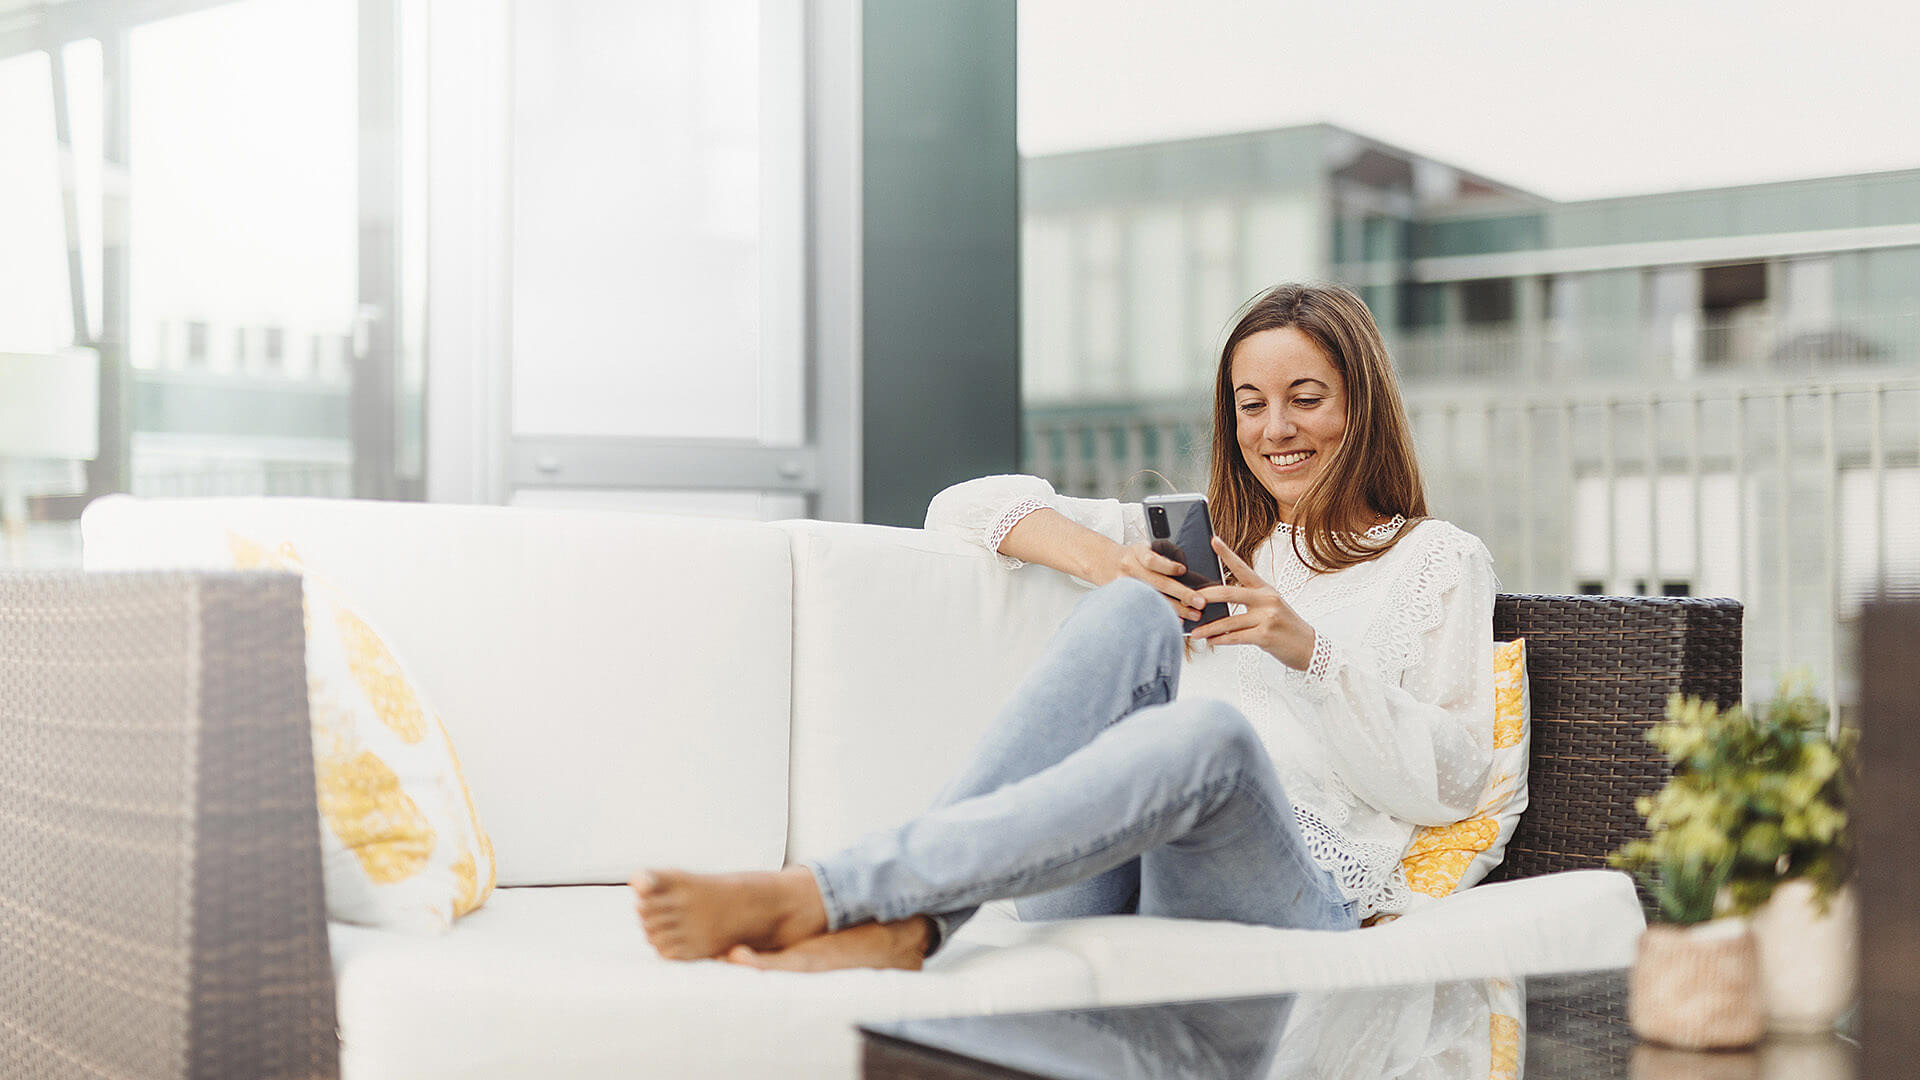 Eine Person sitzt auf einem Sofa, schaut auf ihr Smartphone und lächelt dabei.